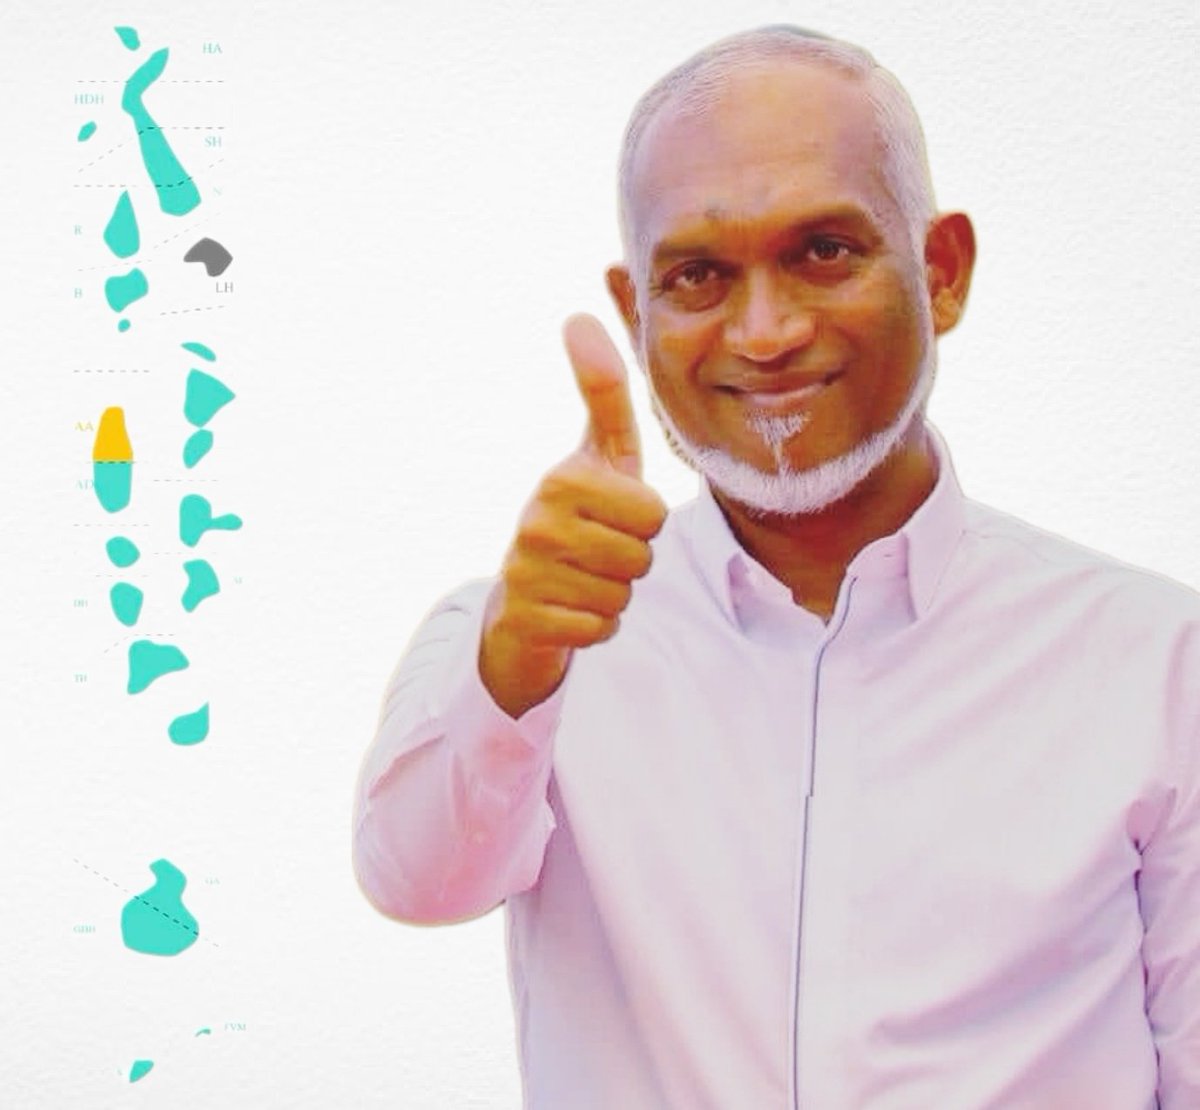 ފަހުގެ ތާރީޚްގަ އެންމެ ބޮޑު ސިޔާސީ ކާމިޔާބެއް ހޯދި ލީޑަރަކީ ރައީސް @MMuizzu
#DhiveheengeMajlis #DhiveheengeRaajje